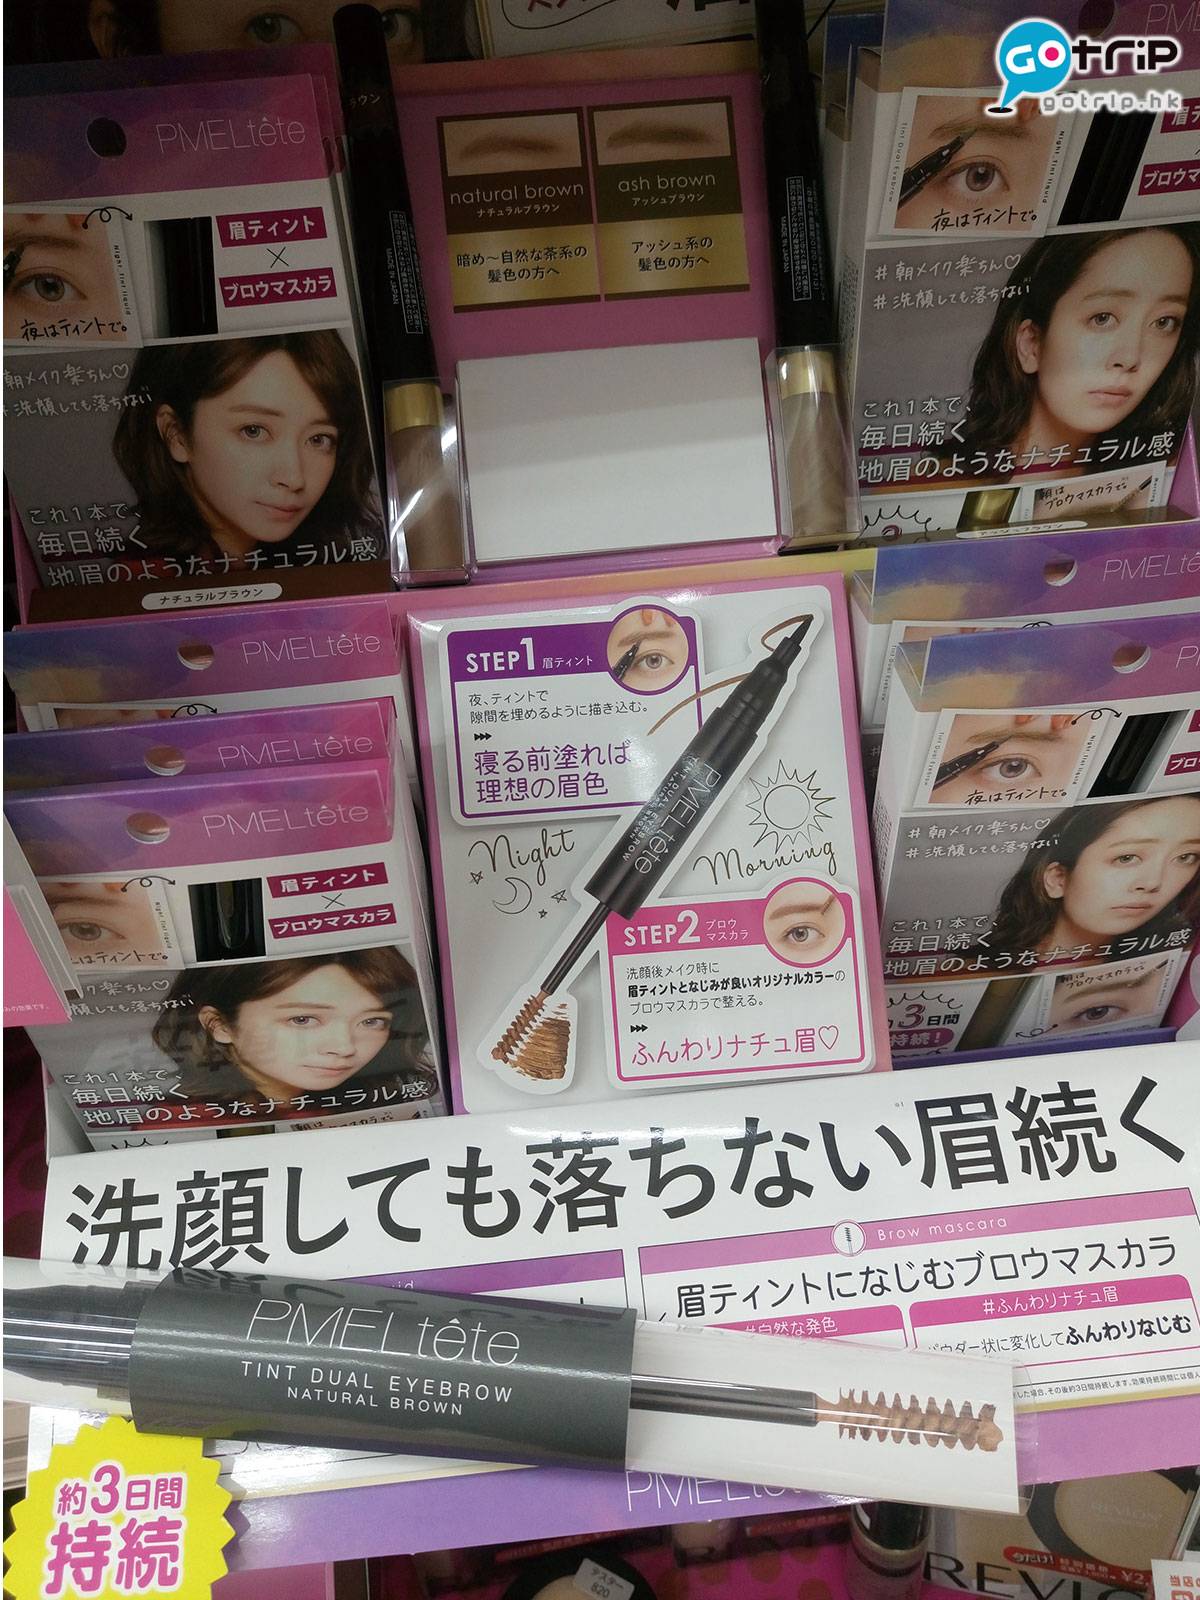 日本化妝品 染眉gel早已有，編輯也有用，但總覺得不好控制，染眉筆就容易上手多了！